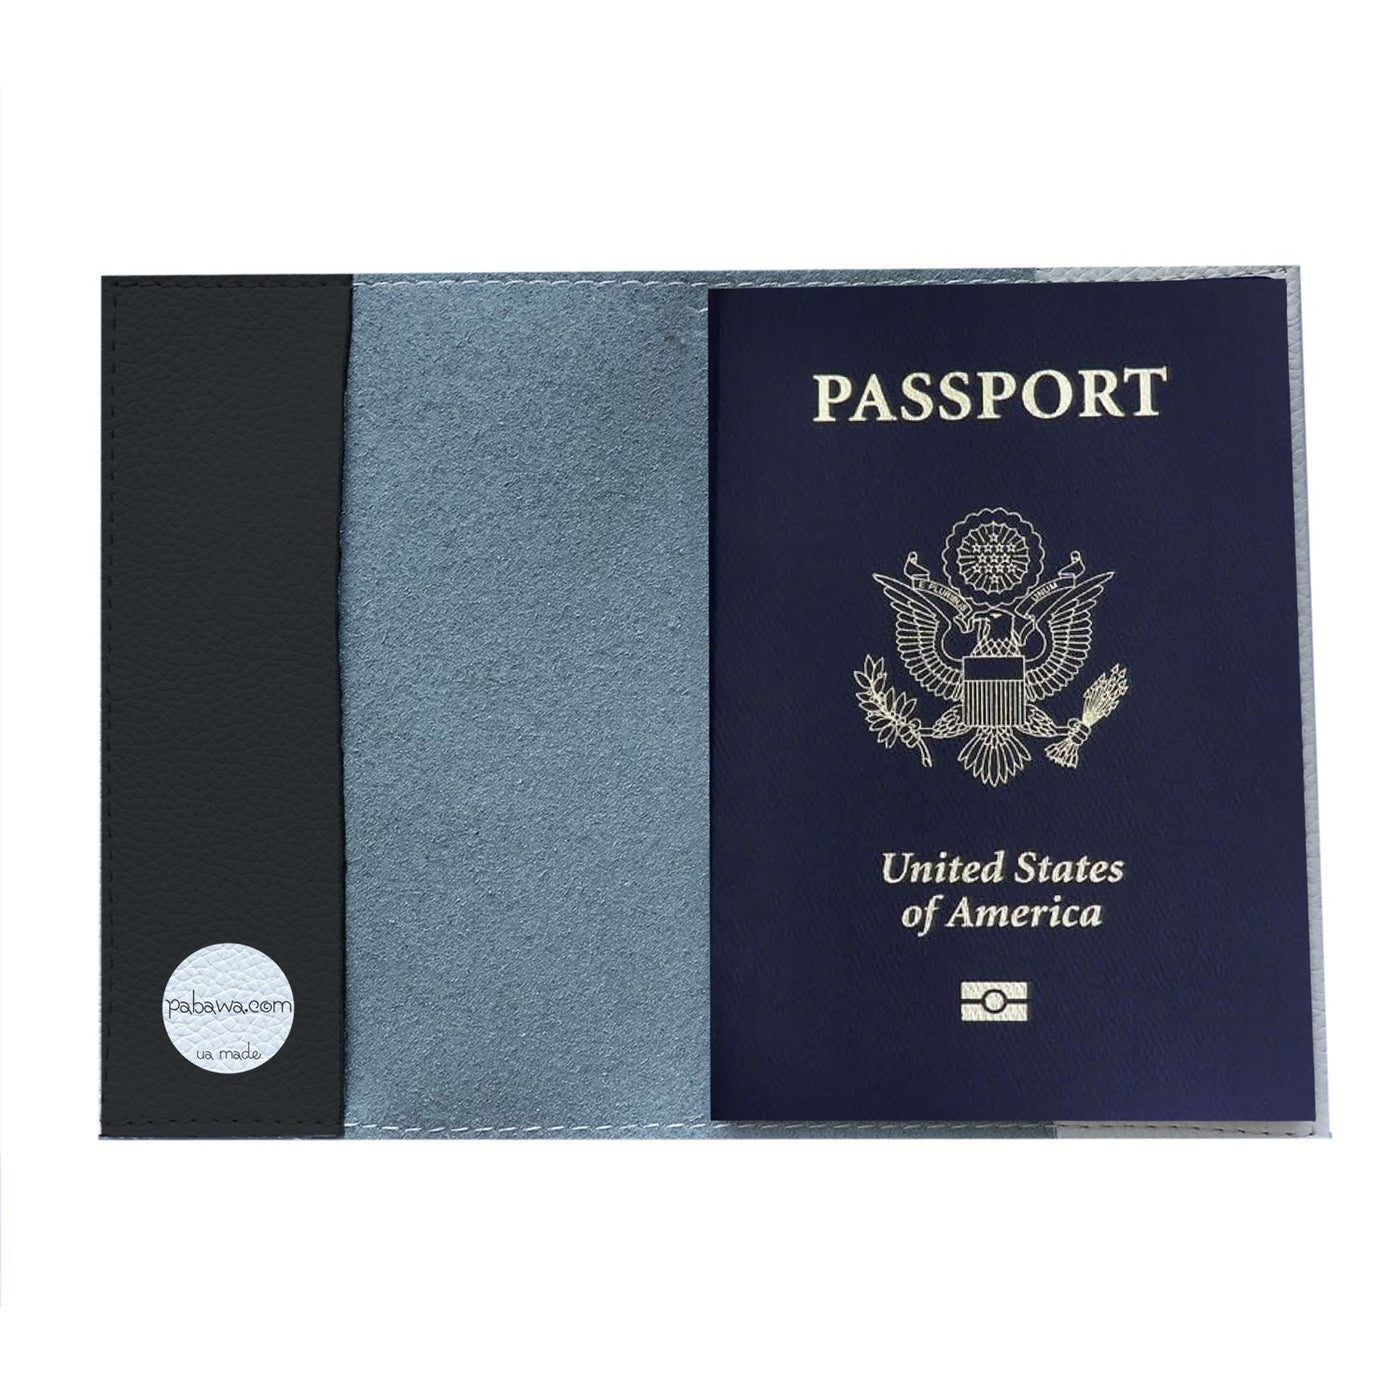 Обкладинка на паспорт Travel MAN (black&white) - Gisolo